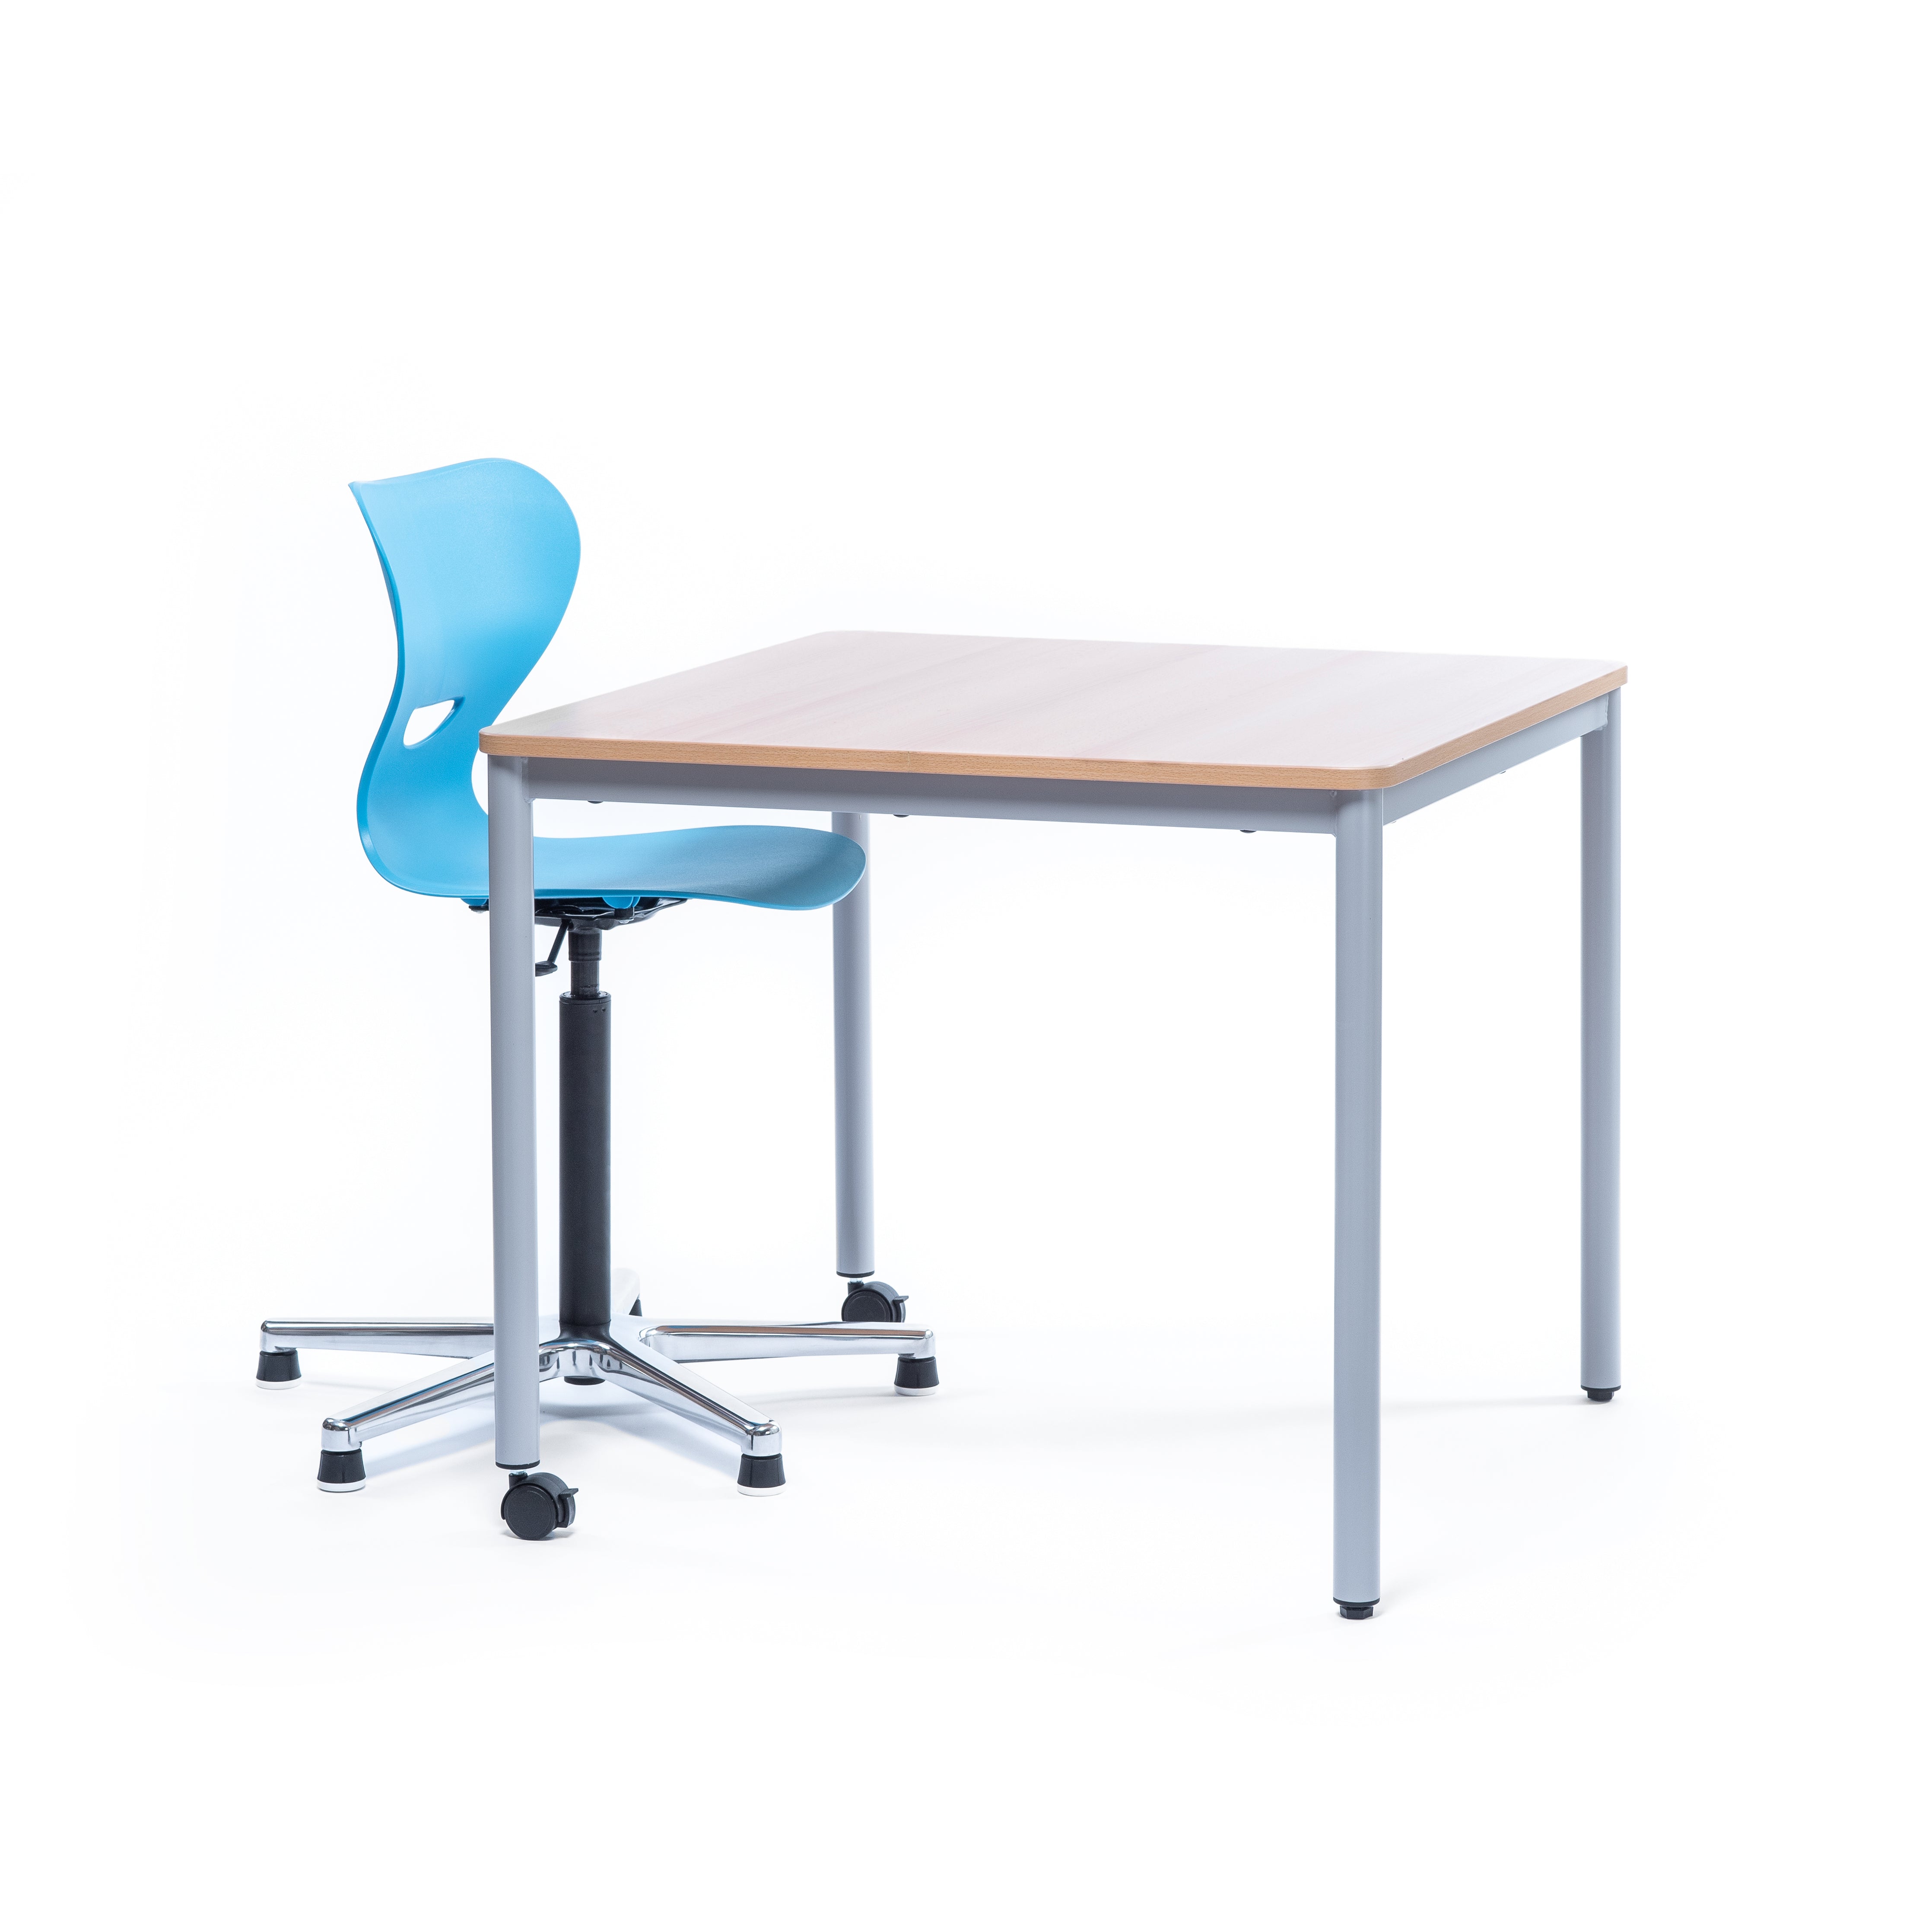 Schultisch auf Rollen mit Holztischplatte und passendem Schülerstuhl höhenverstellbar und blauer Kunststoffsitzschale